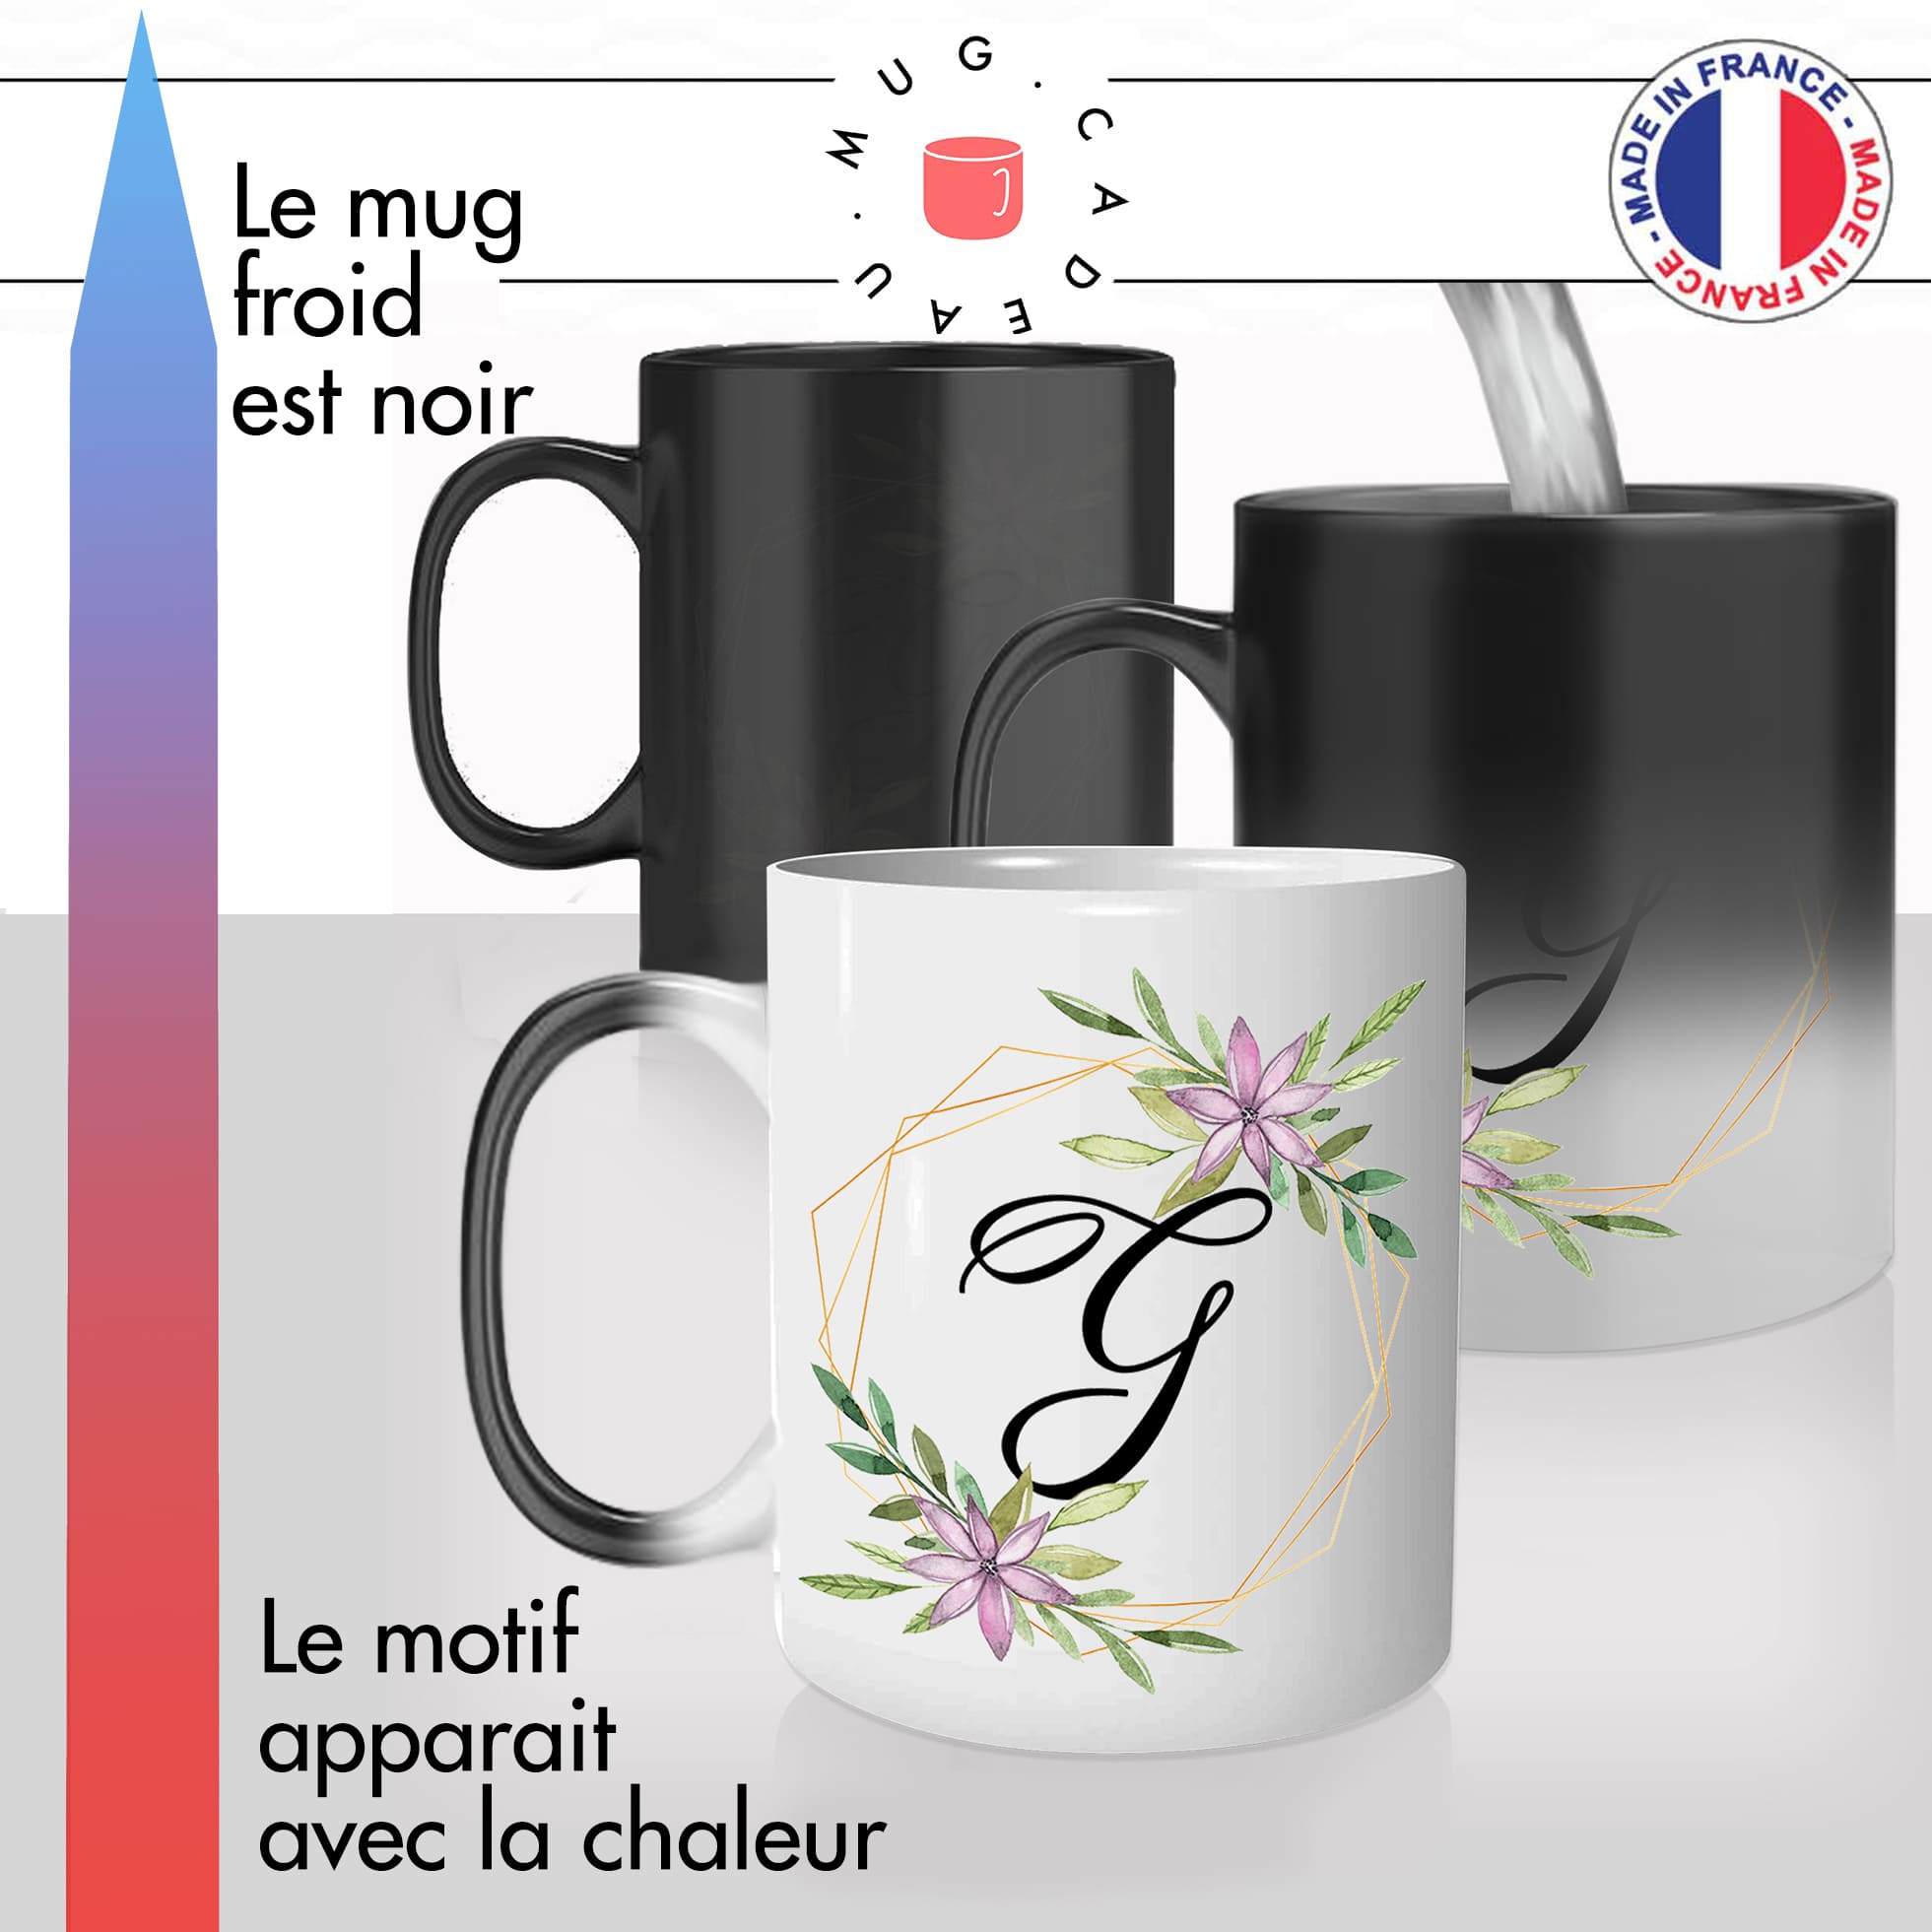 mug magique thermoréactif thermo chauffant personnalisé initiale lettre G fleurs mignon prenom idée cadeau original fun